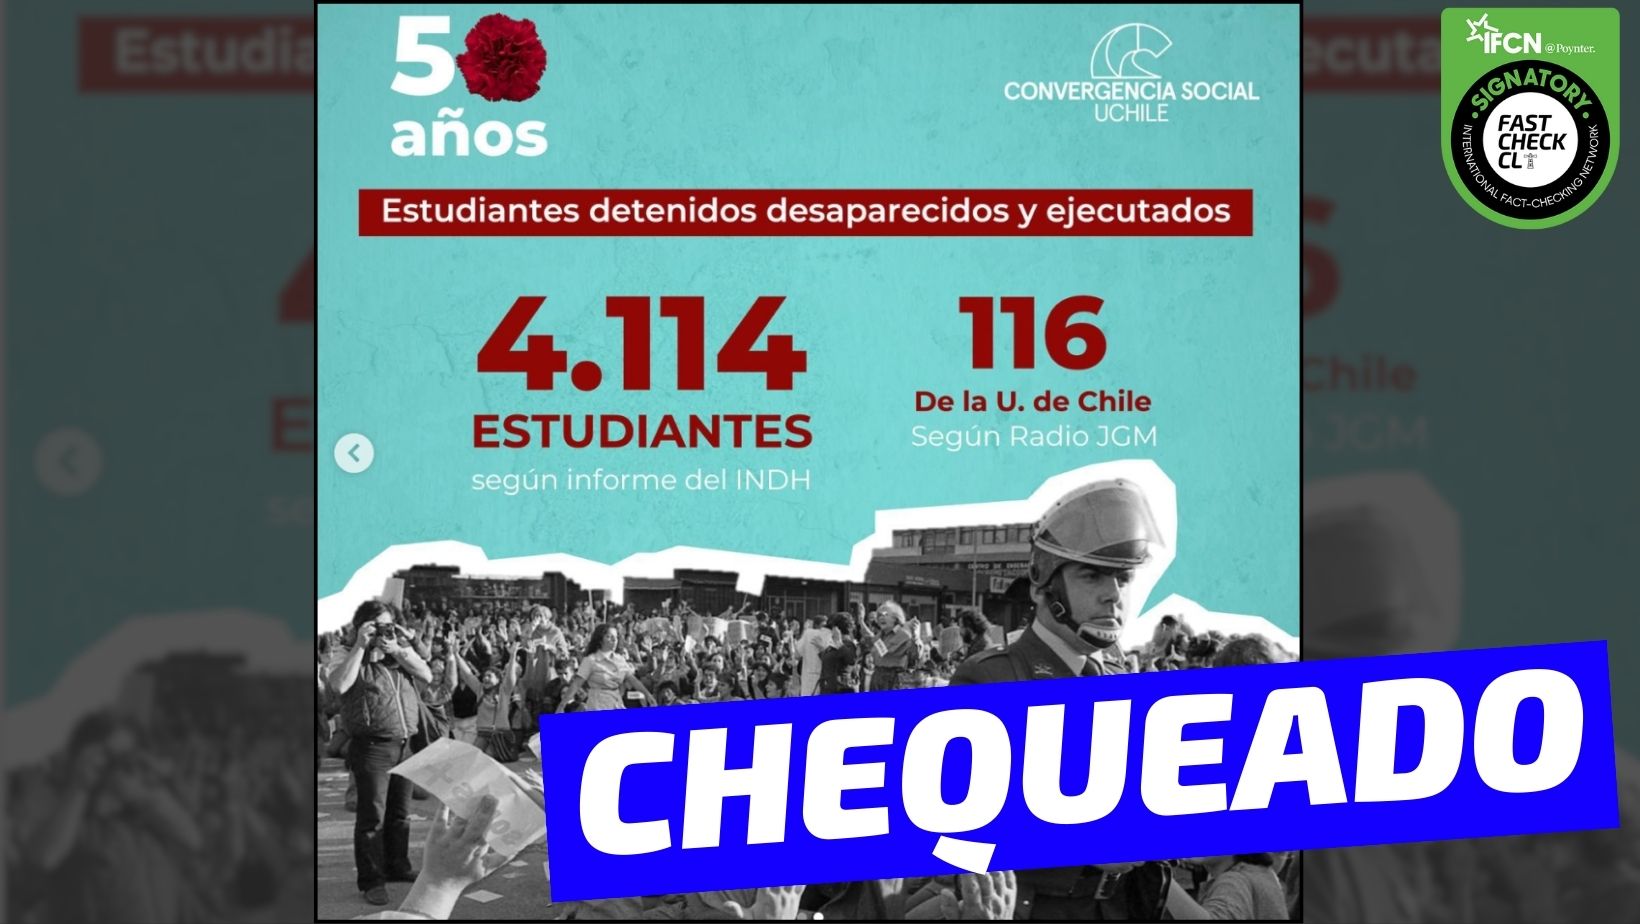 You are currently viewing “Estudiantes detenidos desaparecidos y ejecutados: 4.114 según informe del INDH y 116 de la U. de Chile según Radio JGM”: #Chequeado